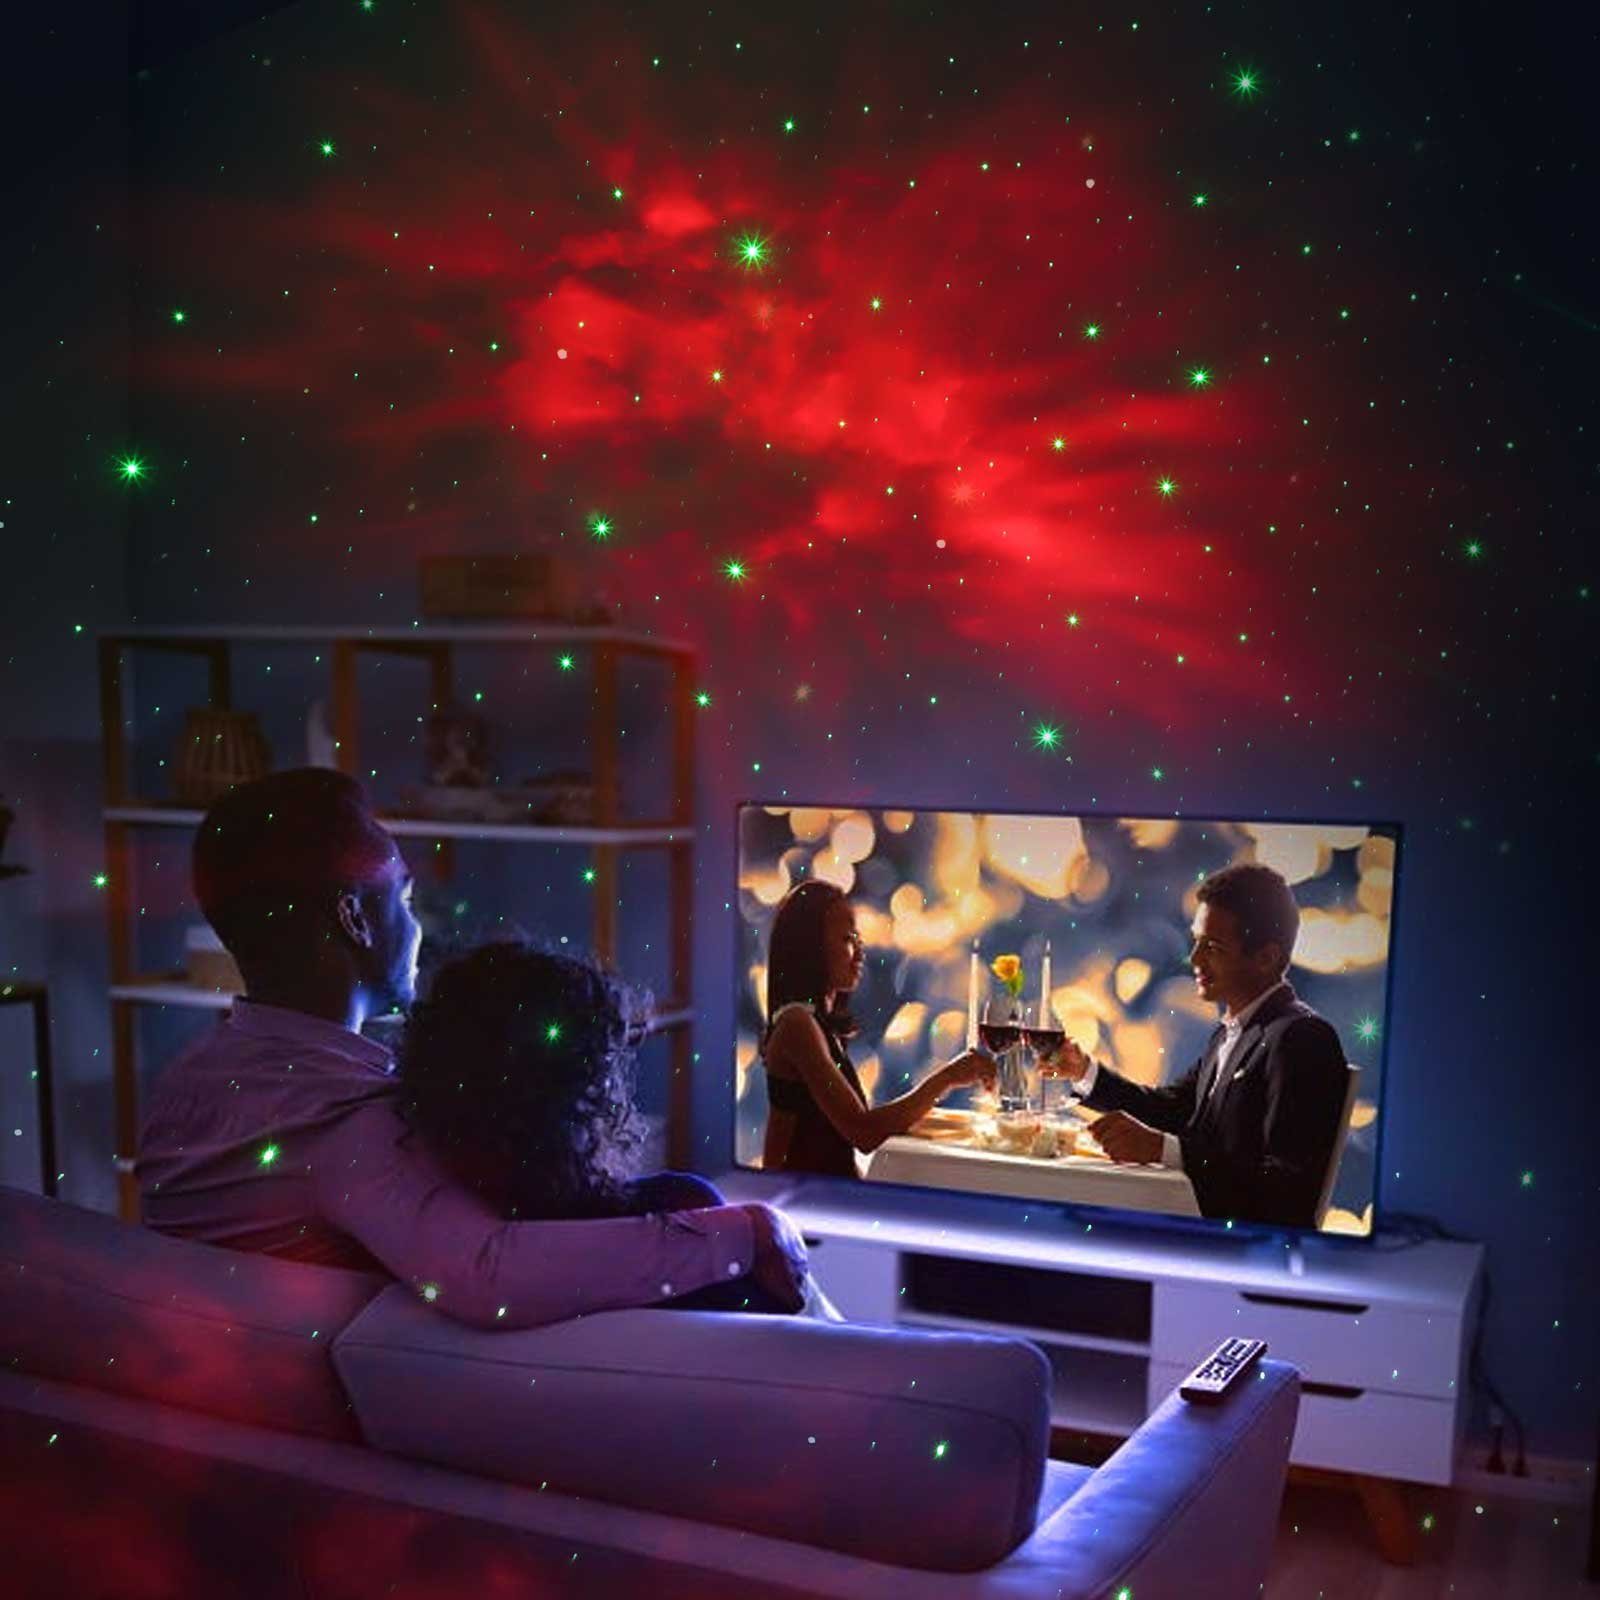 MUPOO LED Nachtlicht Astronauten Sternenhimmel Starry Galaxy Light & Mit Projector, Nachtlicht Fernbedienung Astronauten LED Lampe Timer Projektor